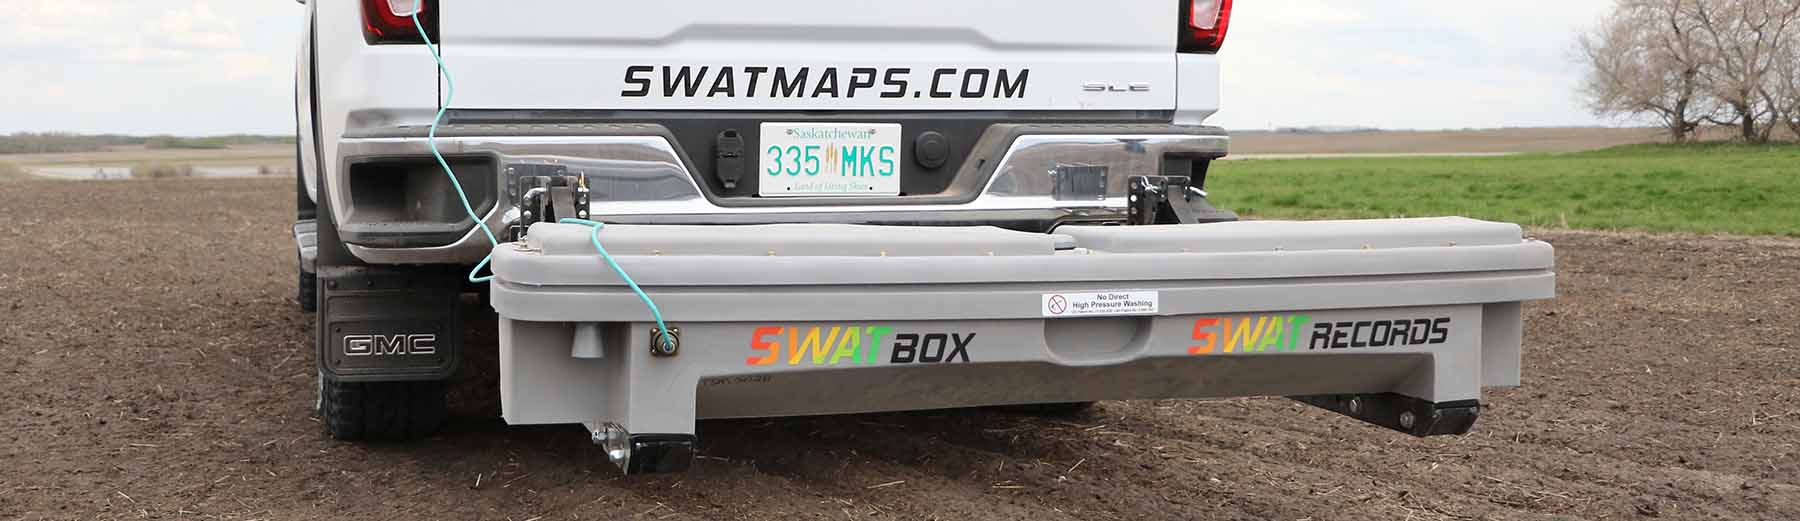 swat-box-2